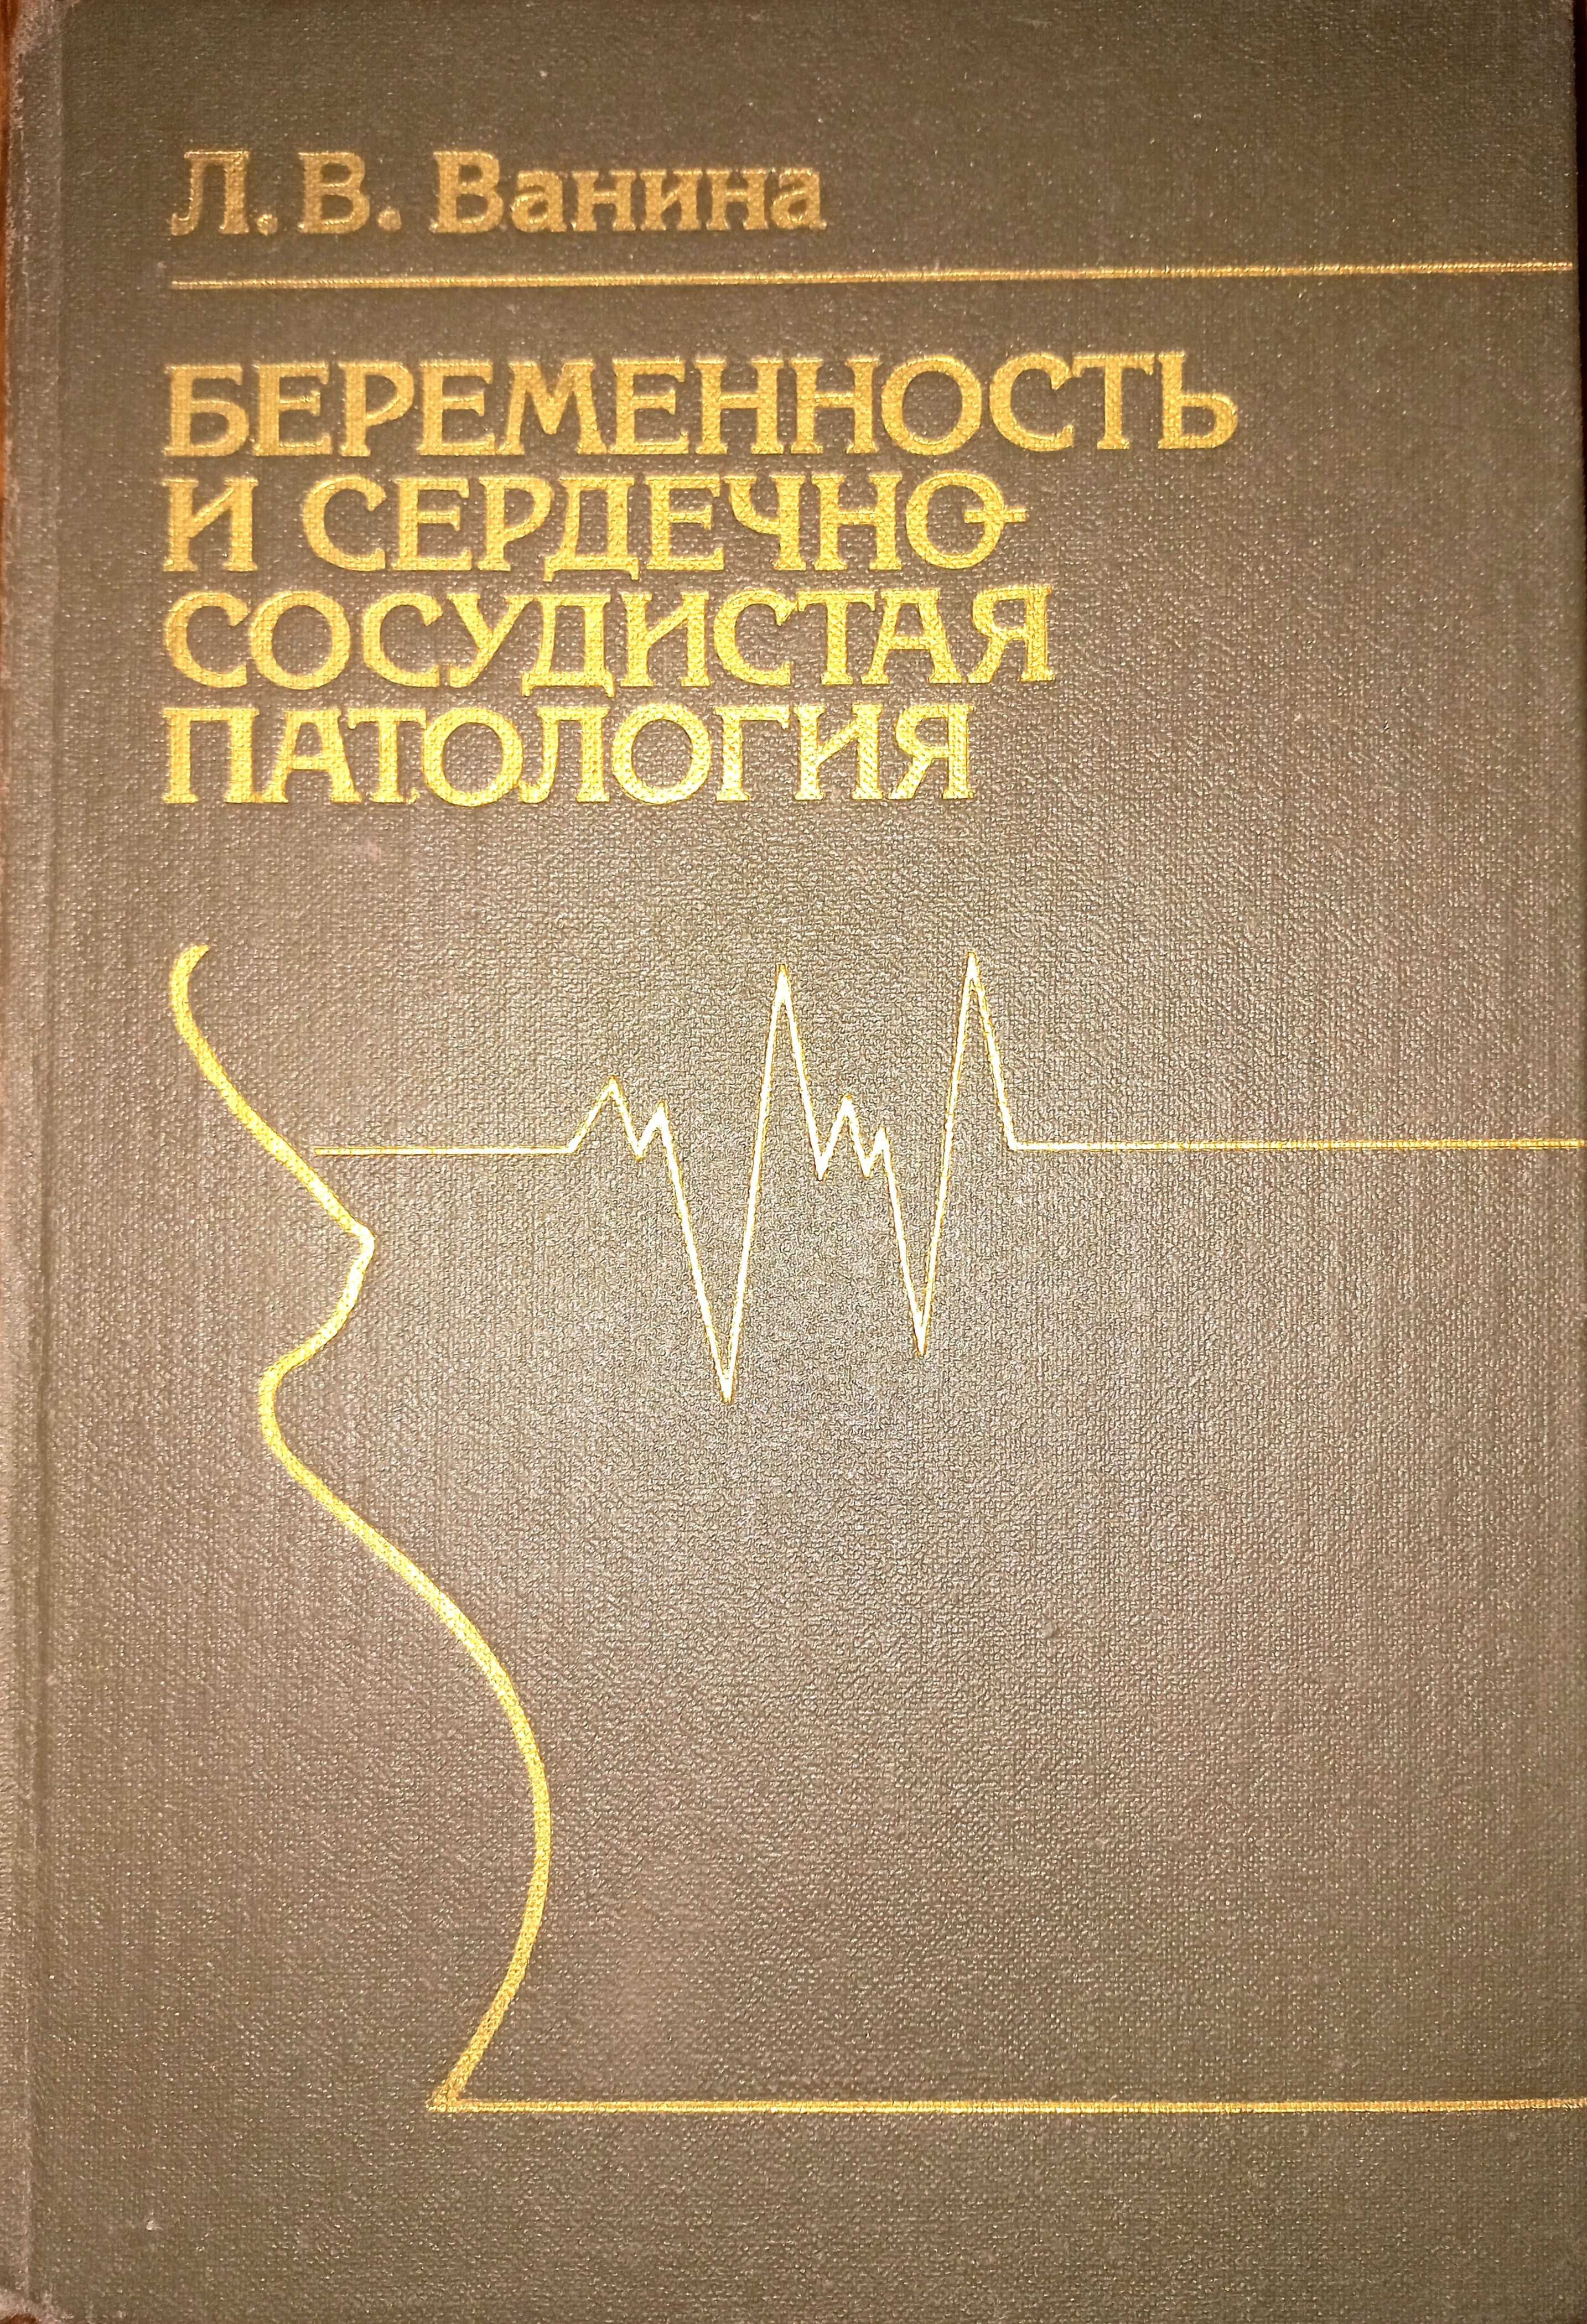 Беременность и сердечно-сосудистая патология Ванина Л. В.